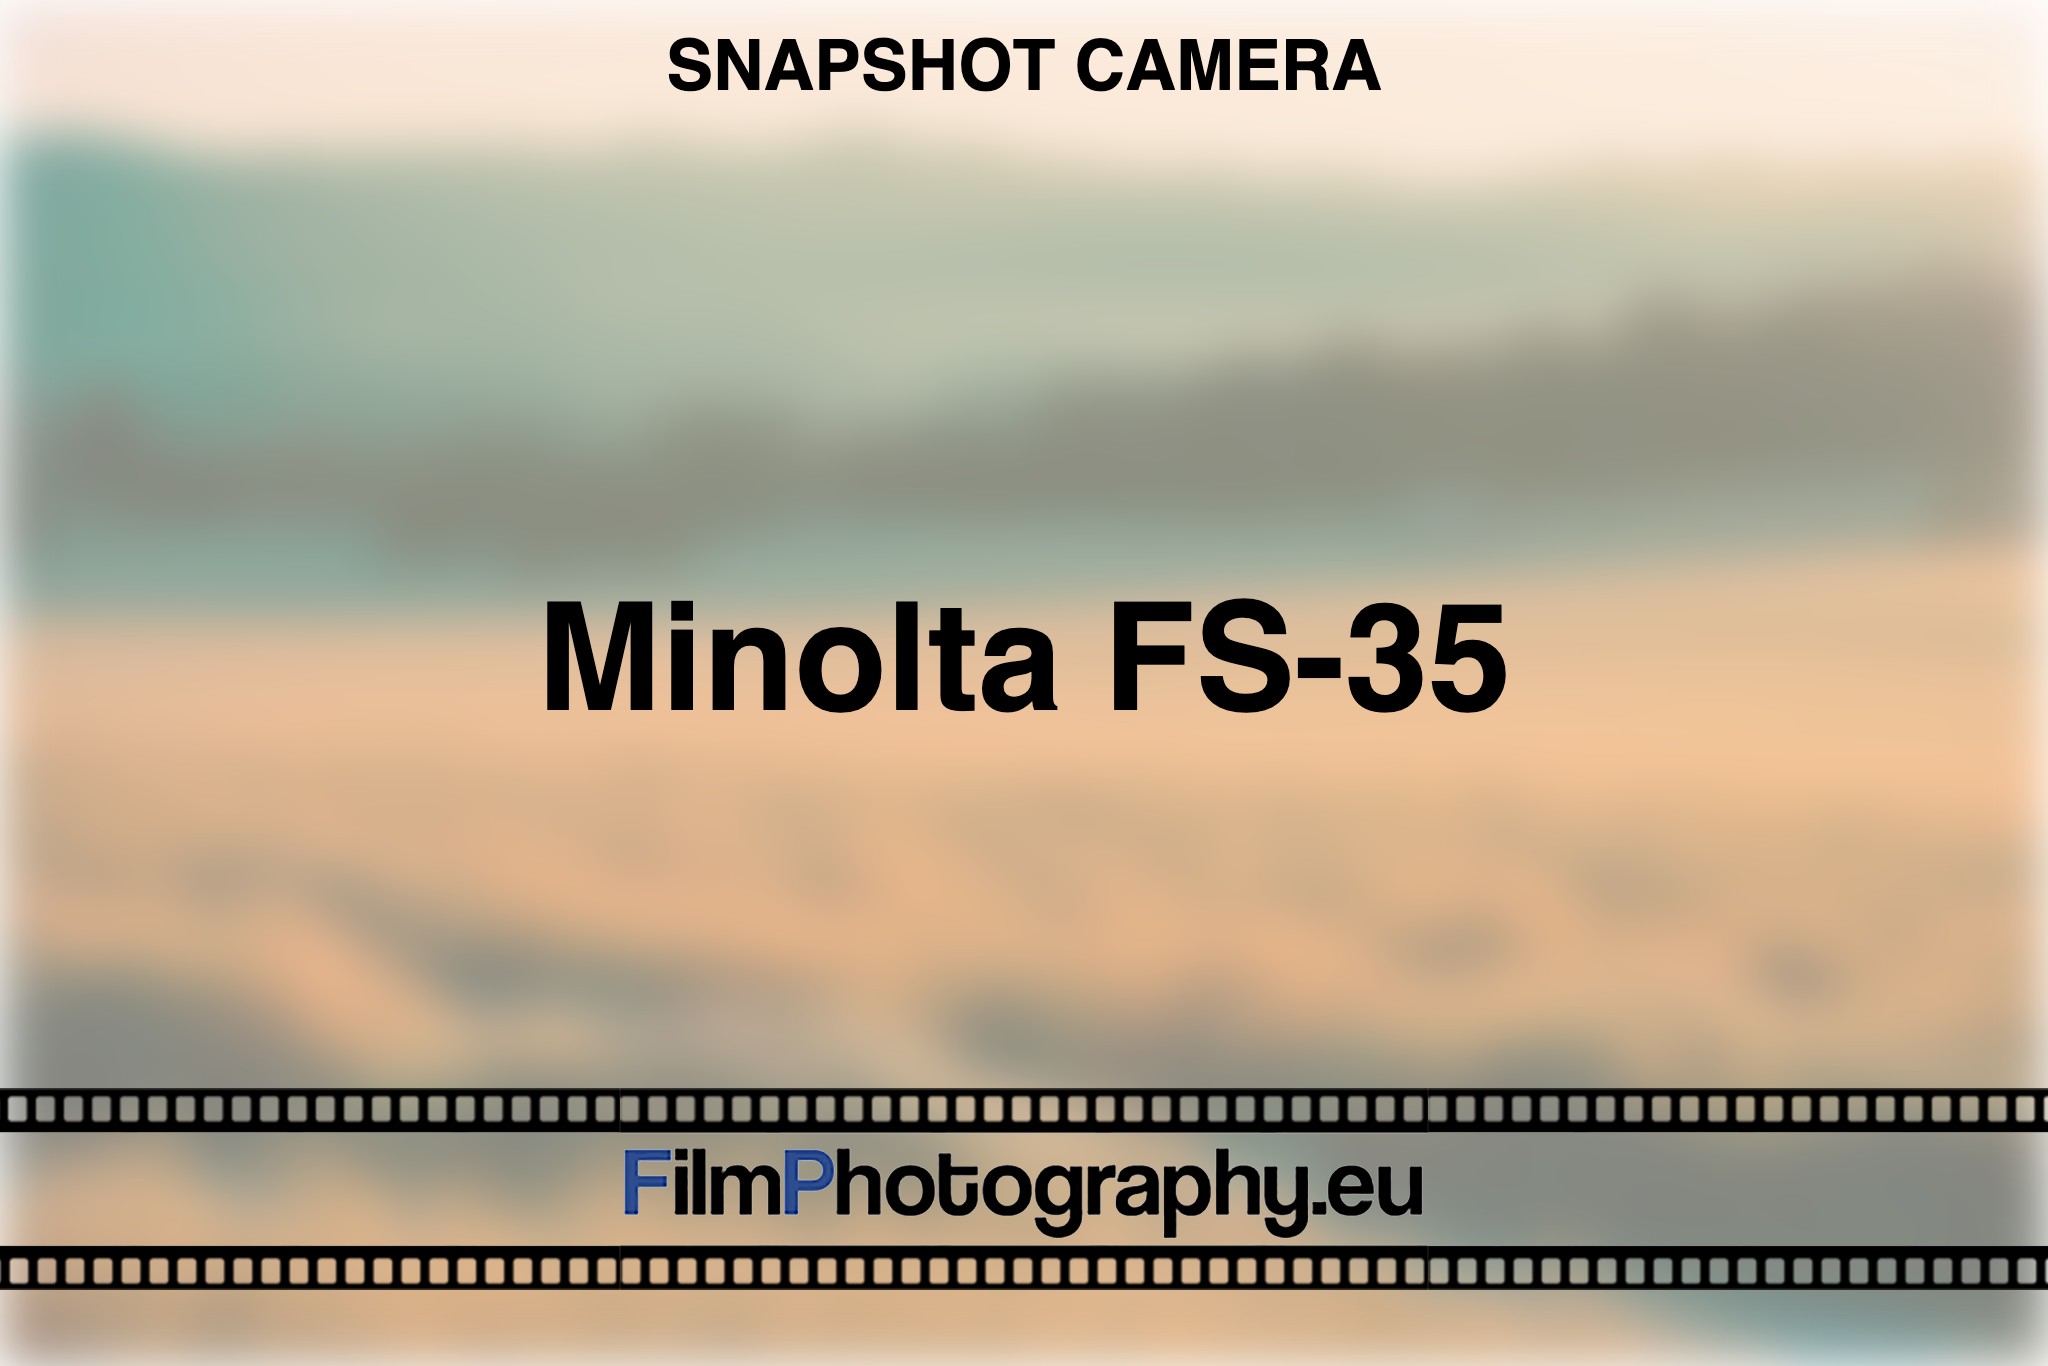 minolta-fs-35-snapshot-camera-bnv